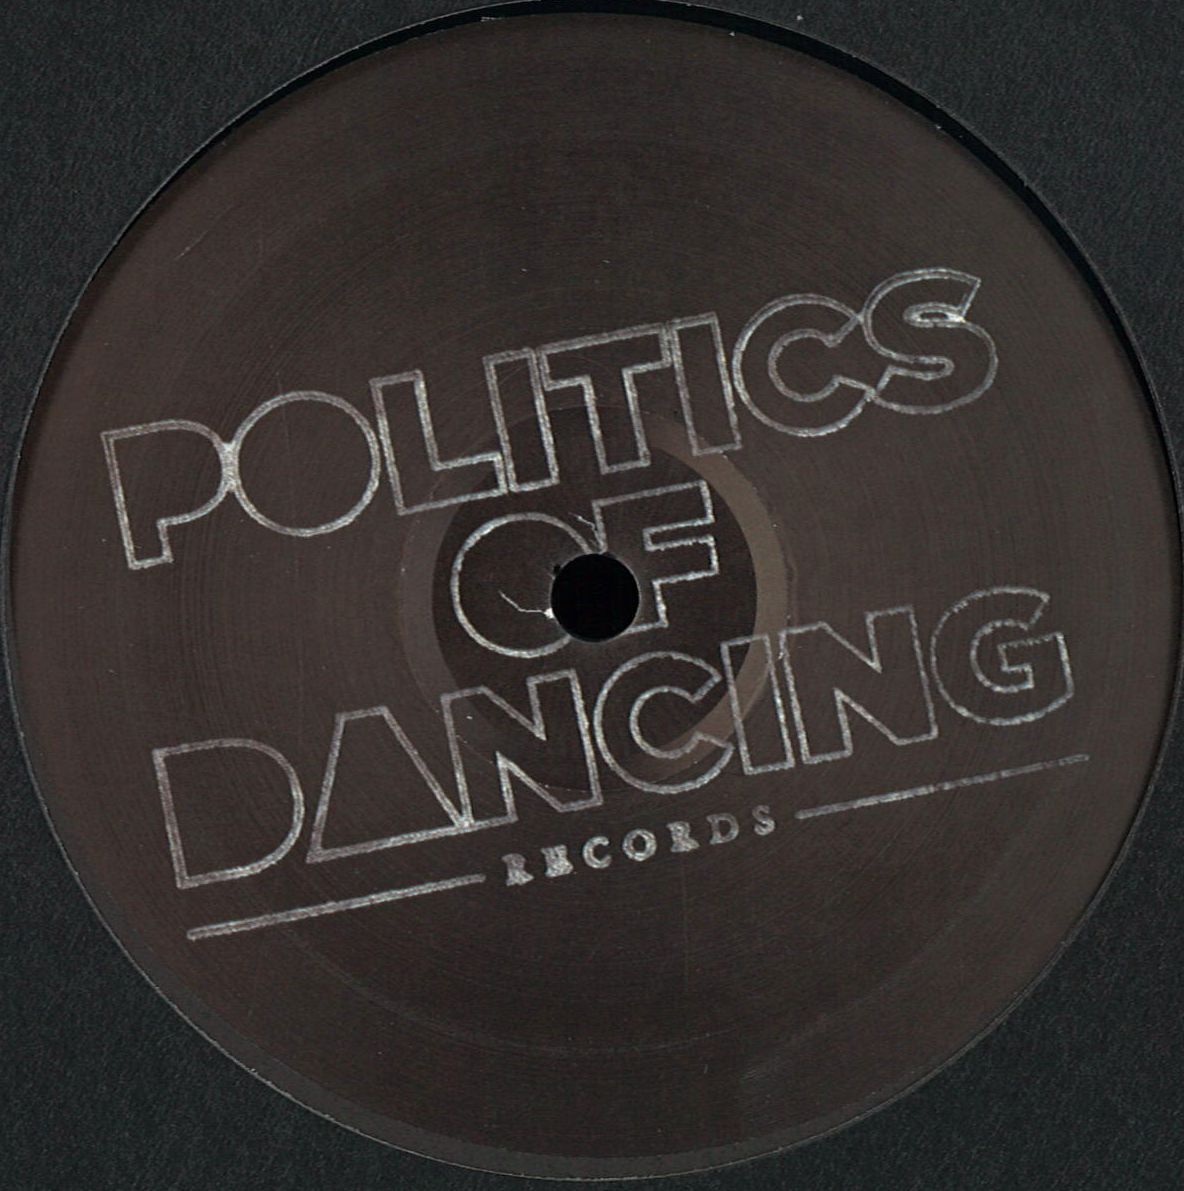 VA - P.O.D Records 3 Years Part 1 / Politics Of Dancing